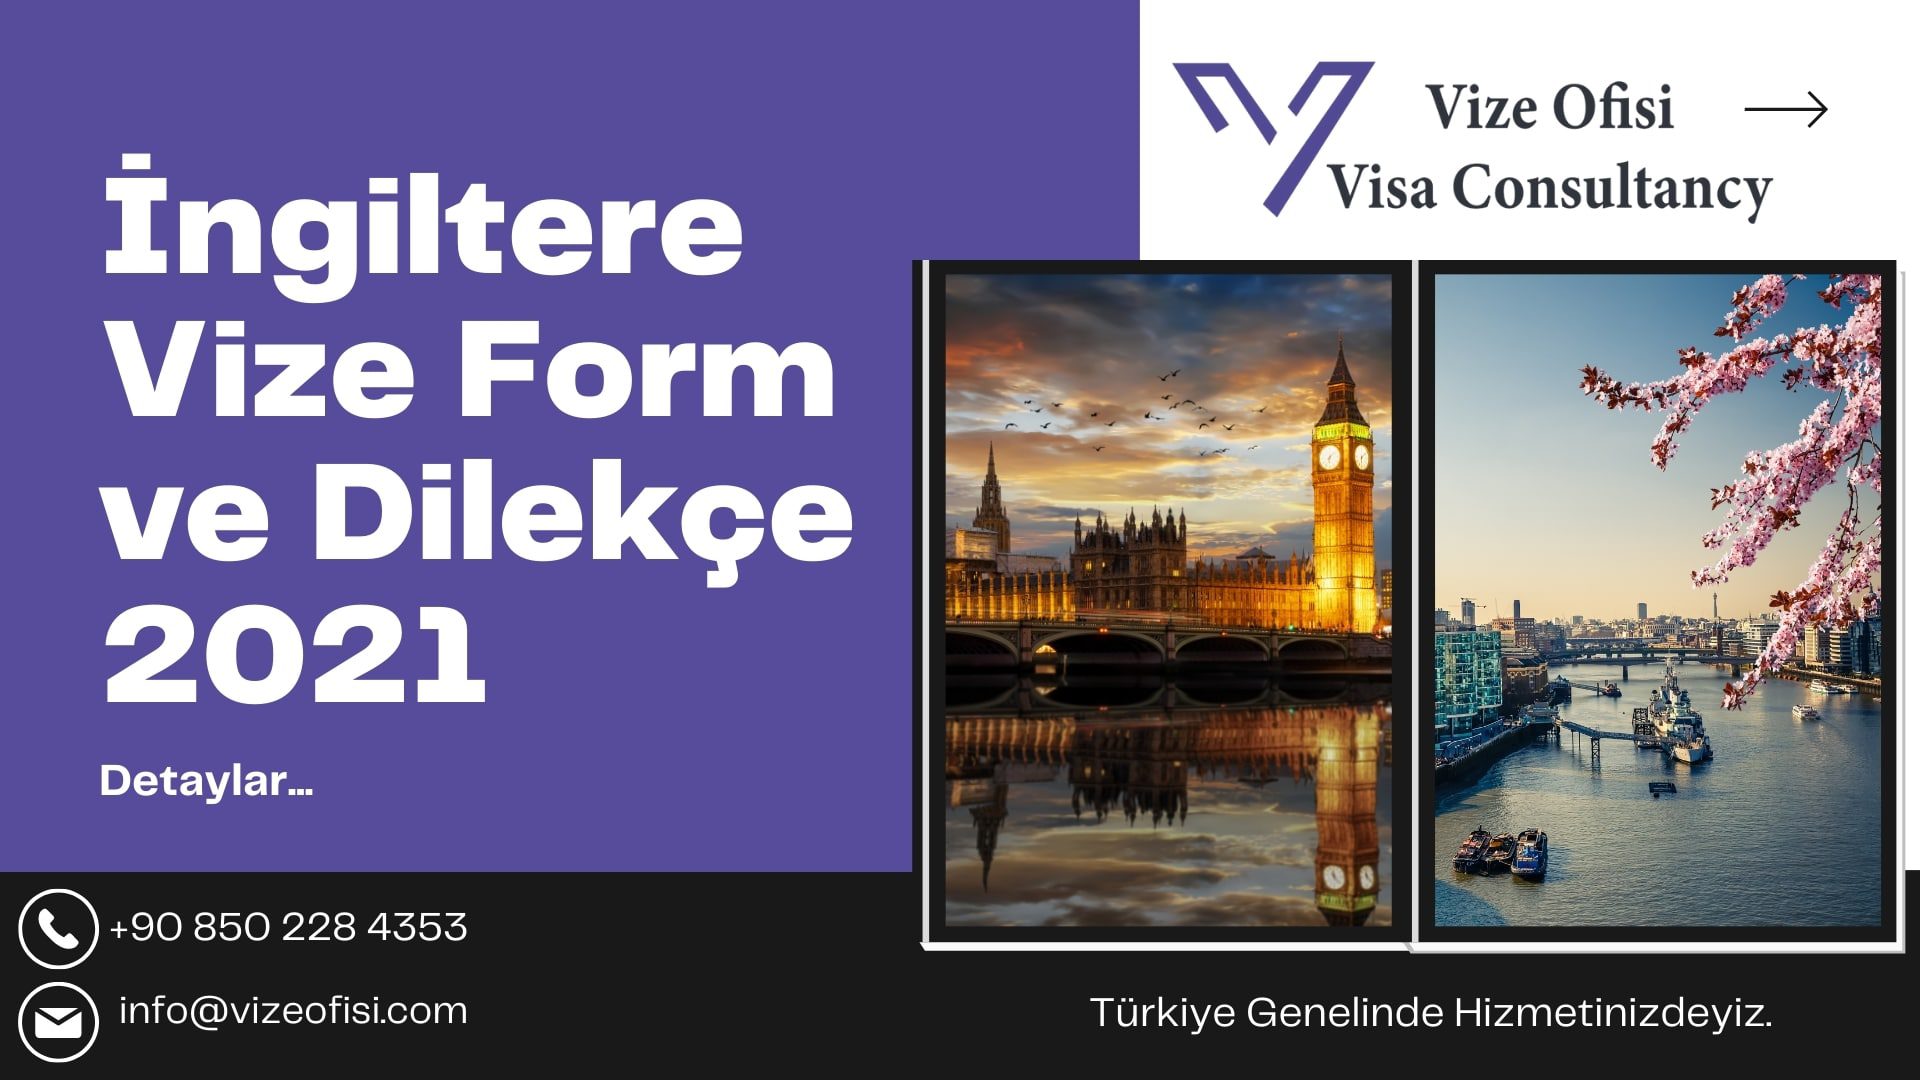 İngiltere Vize Form ve Dilekçe 2021